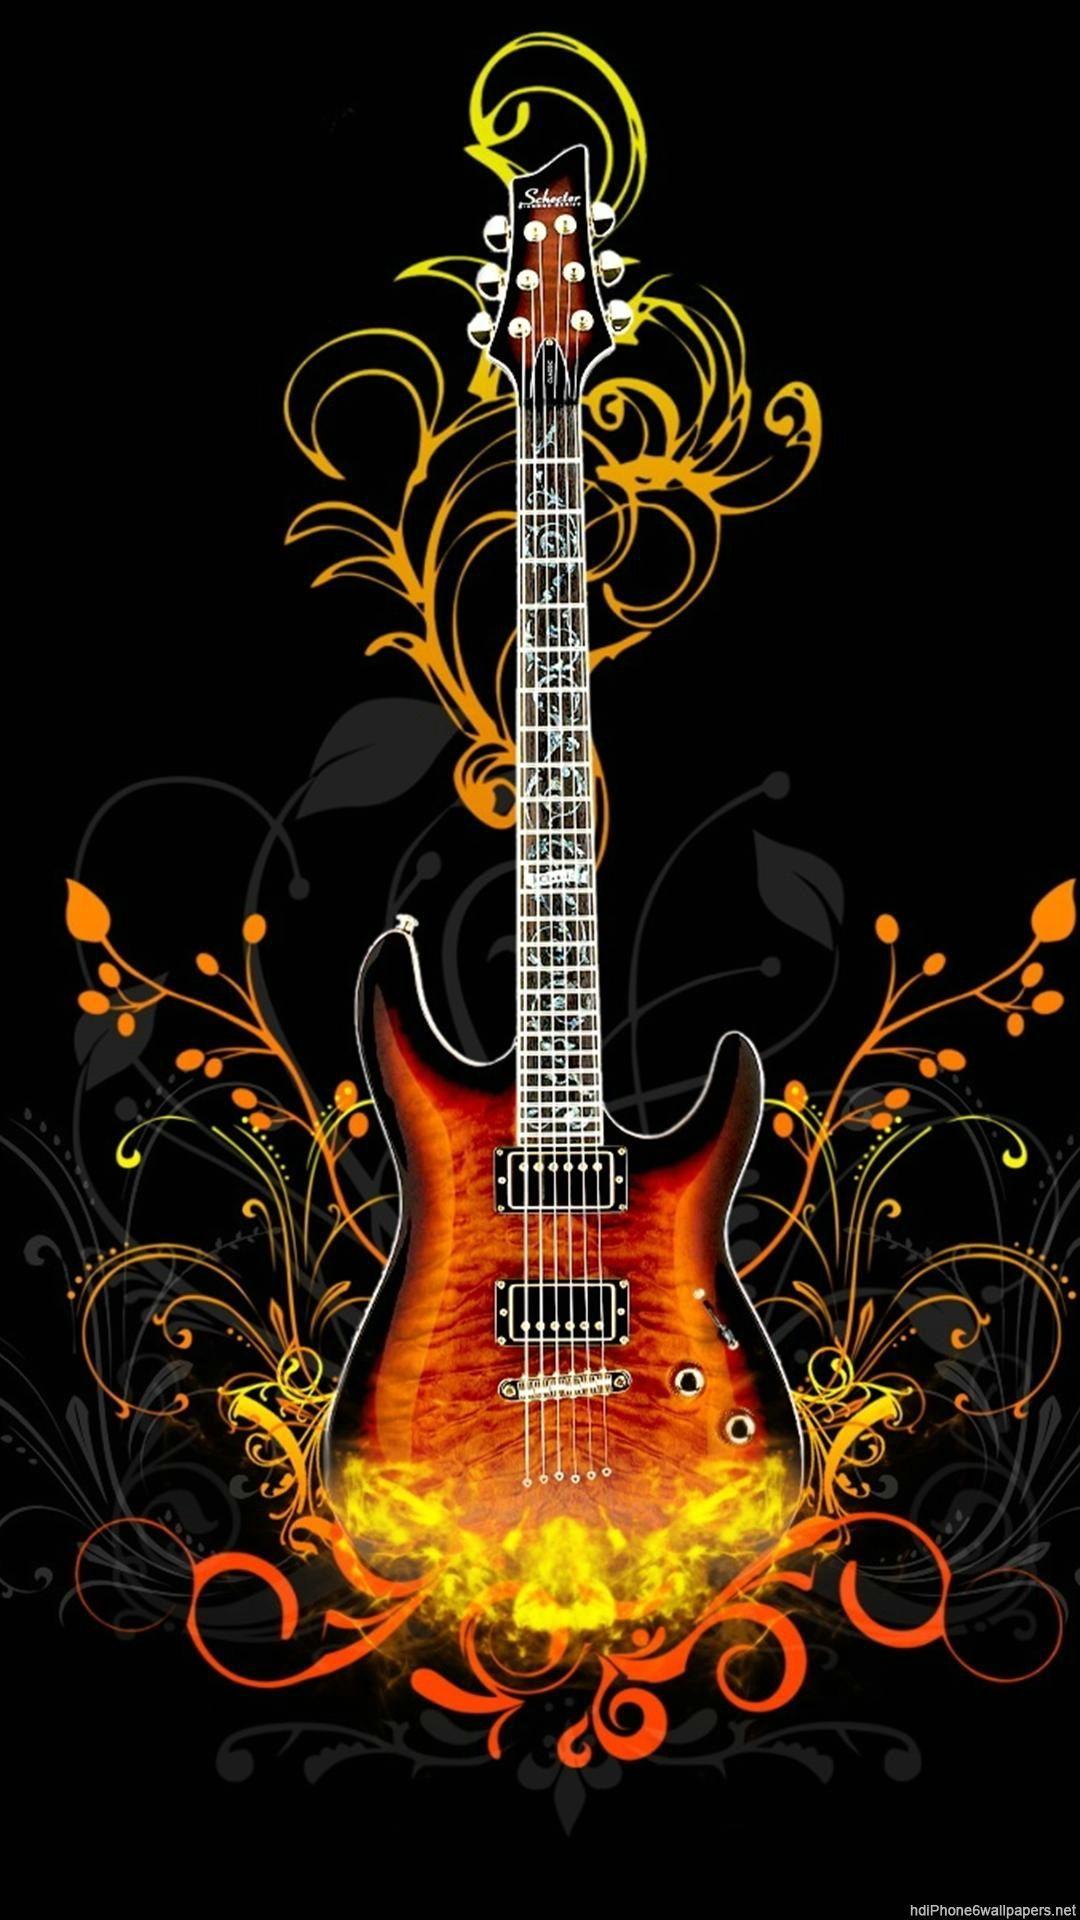 3D Guitar Wallpaper iPhone iPhone Wallpaper. Guitars